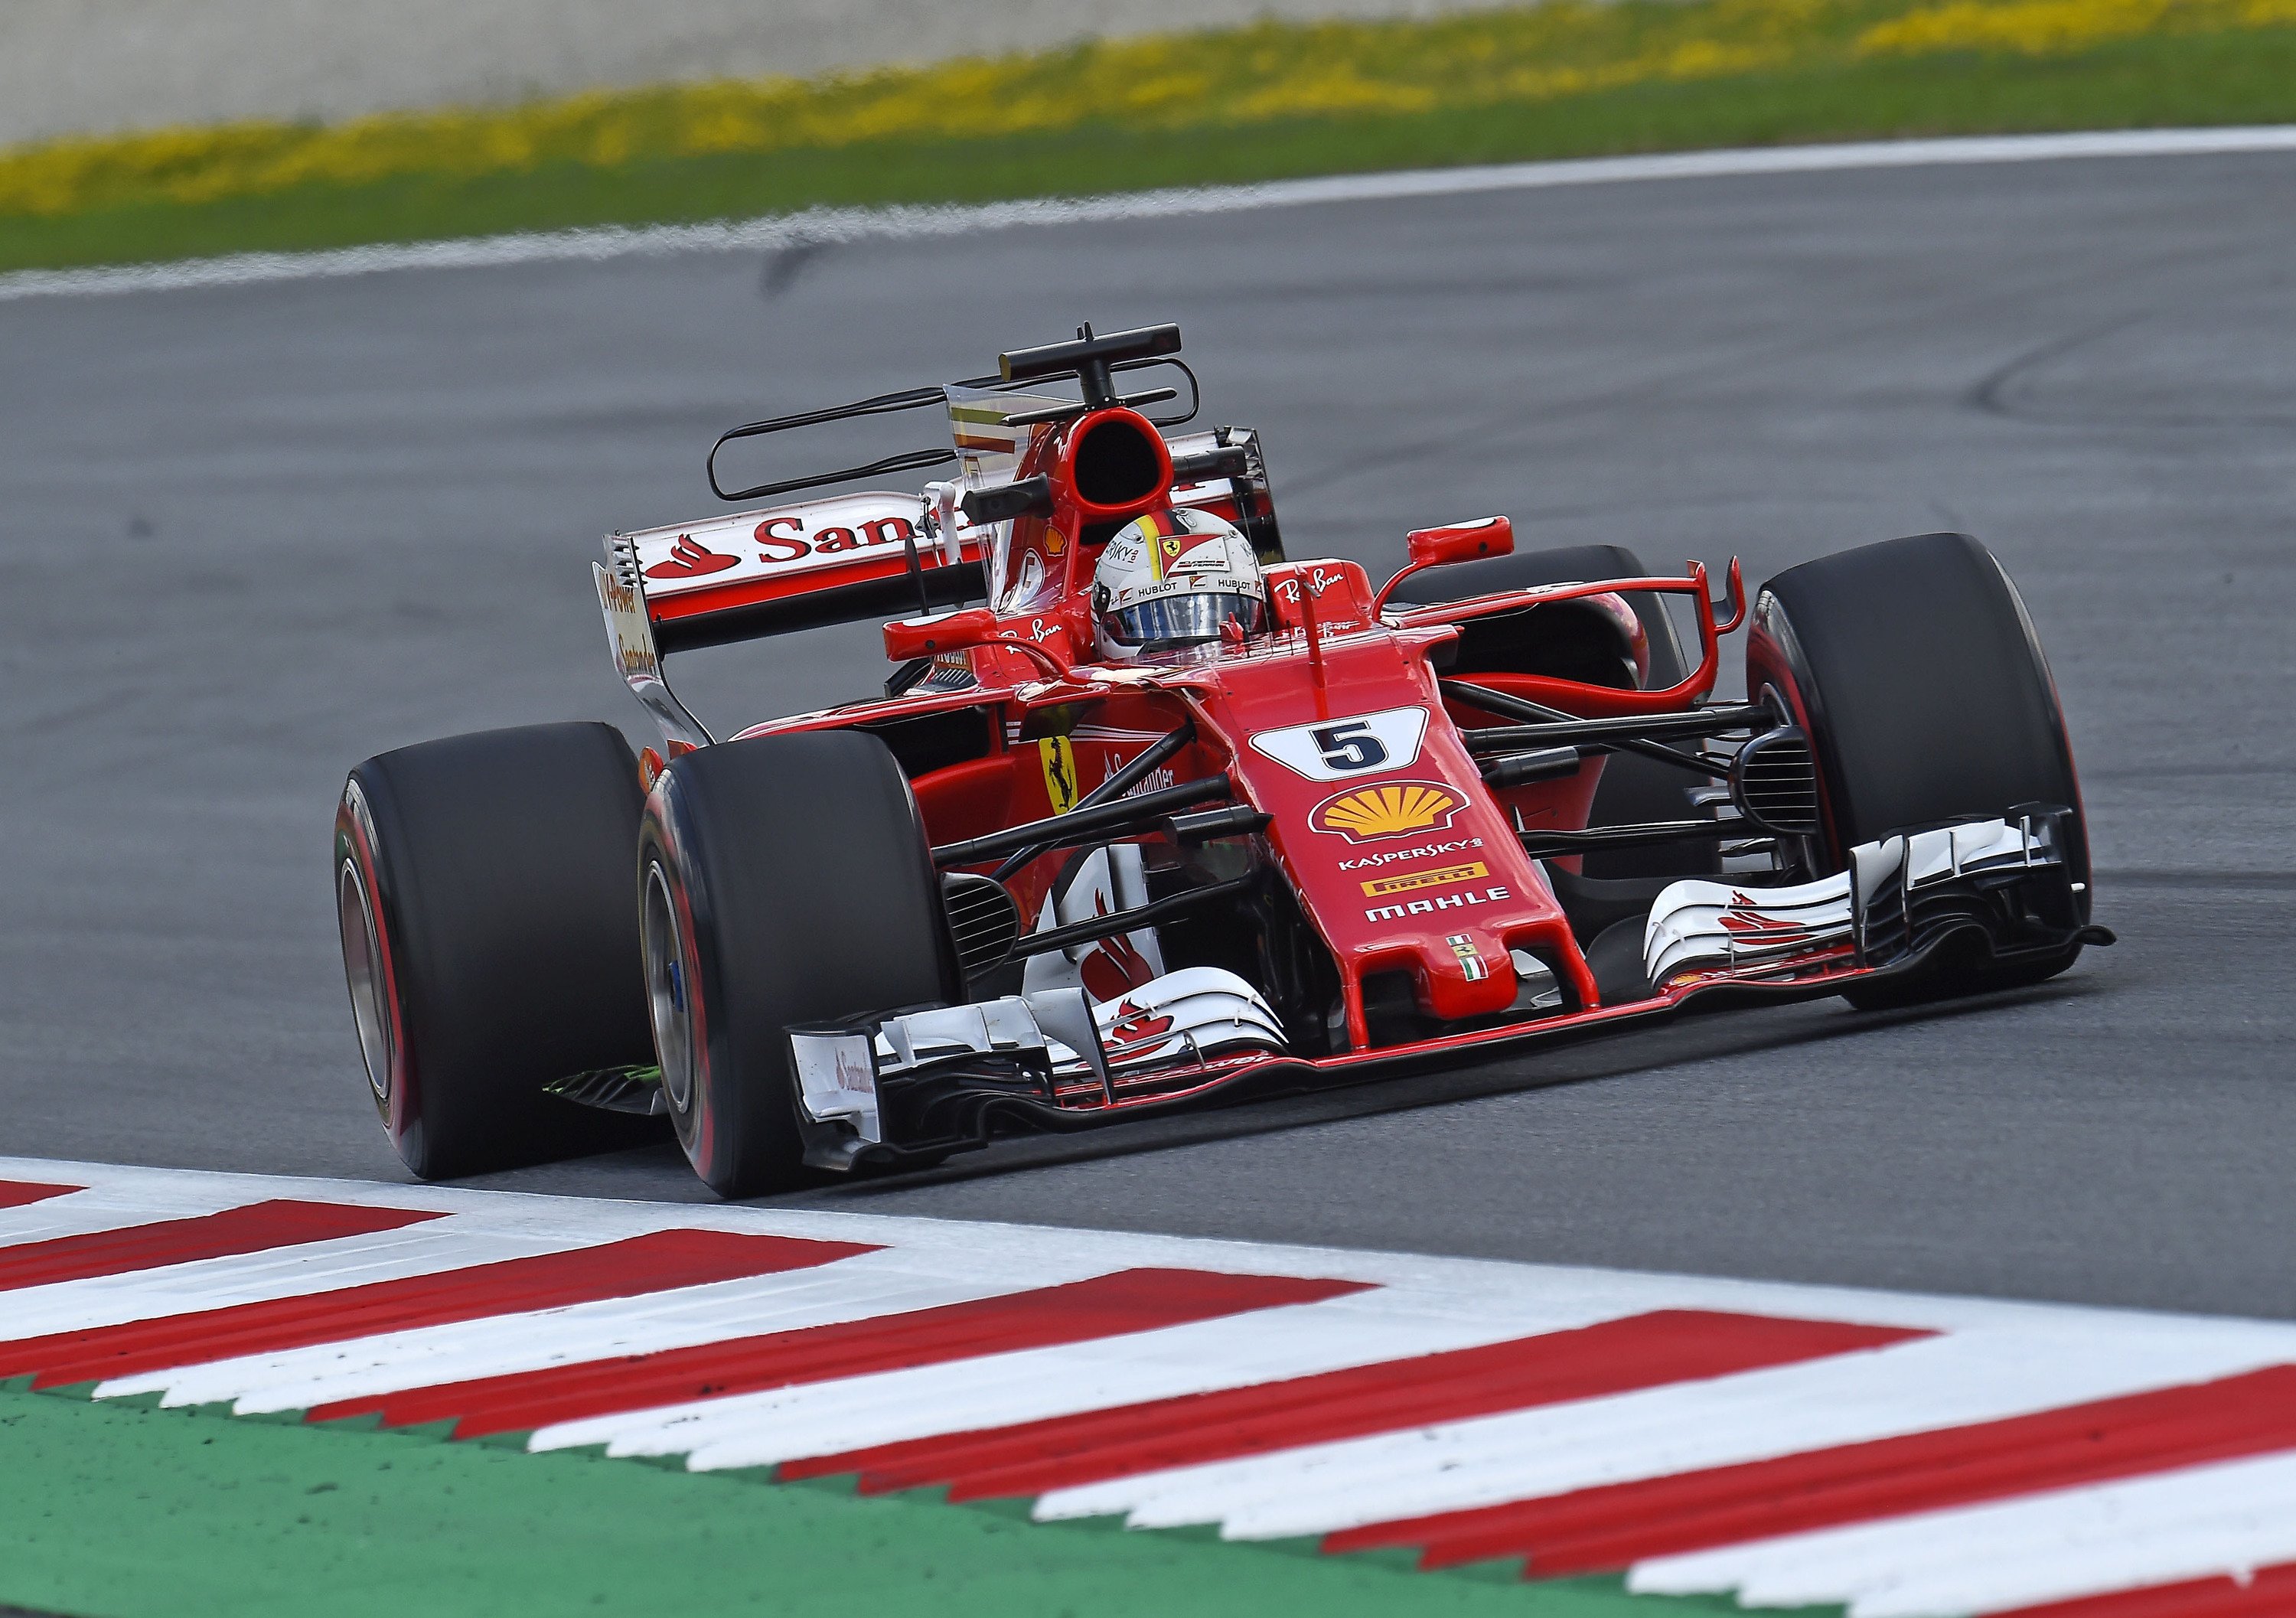 F1, GP Austria 2017, Vettel: &laquo;Non avrei potuto fare molto di pi&ugrave;&raquo;